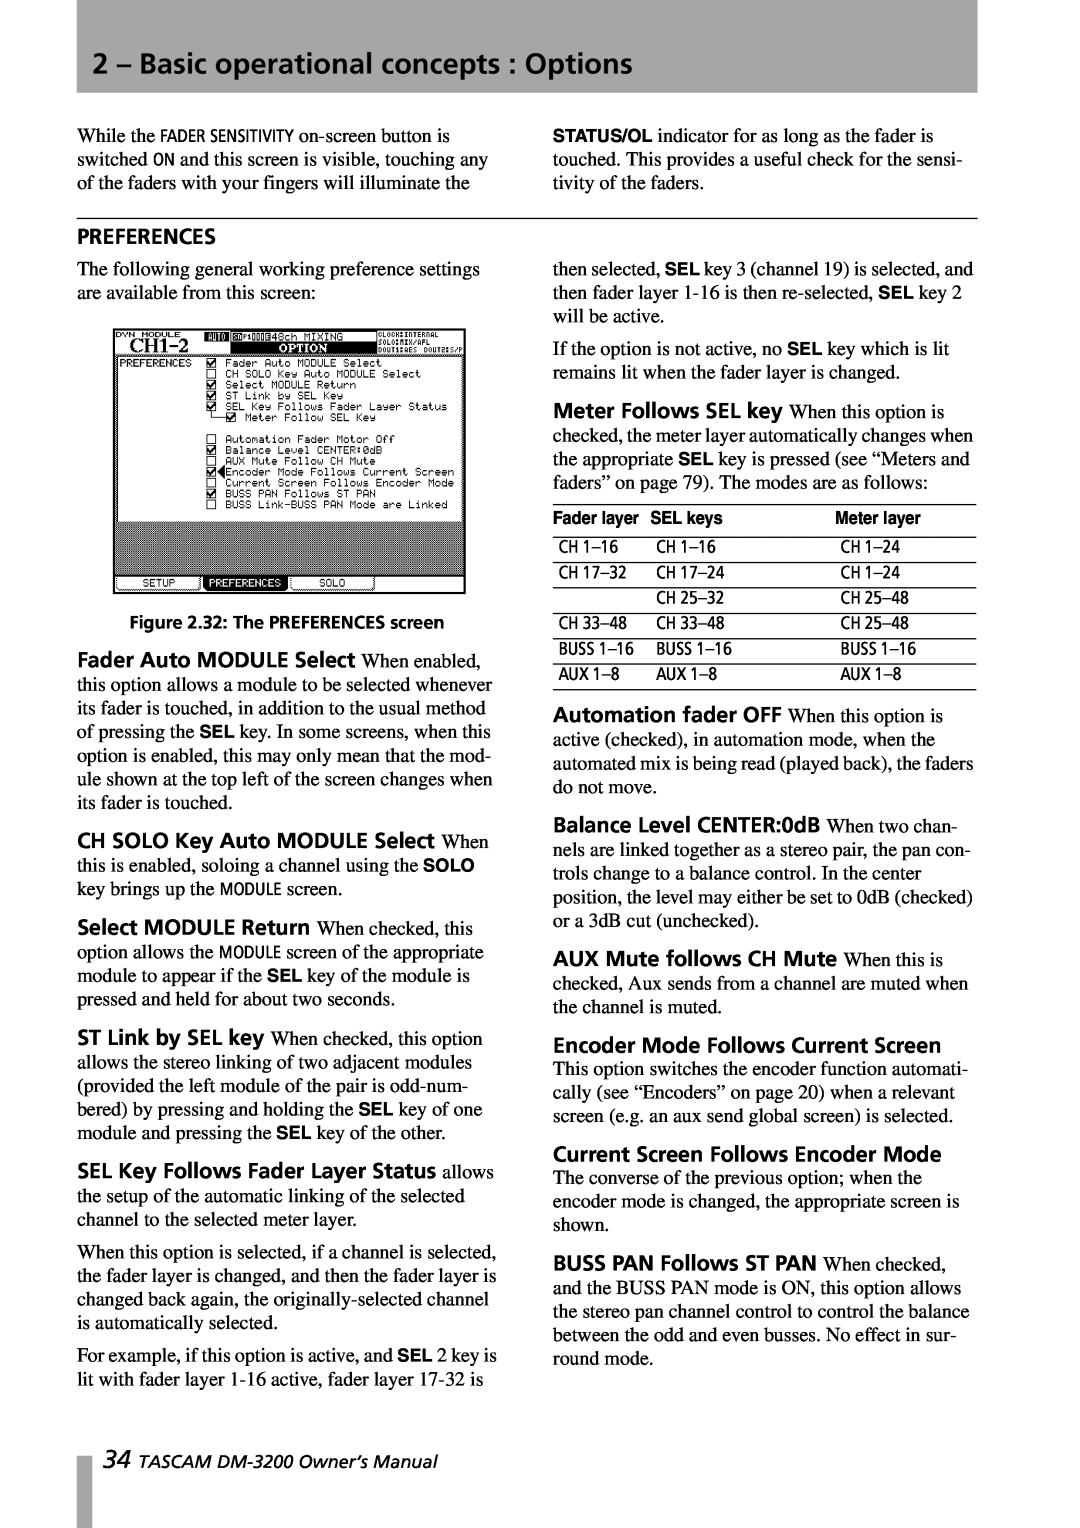 Tascam DM-3200 owner manual Preferences, Encoder Mode Follows Current Screen, Current Screen Follows Encoder Mode, SEL keys 